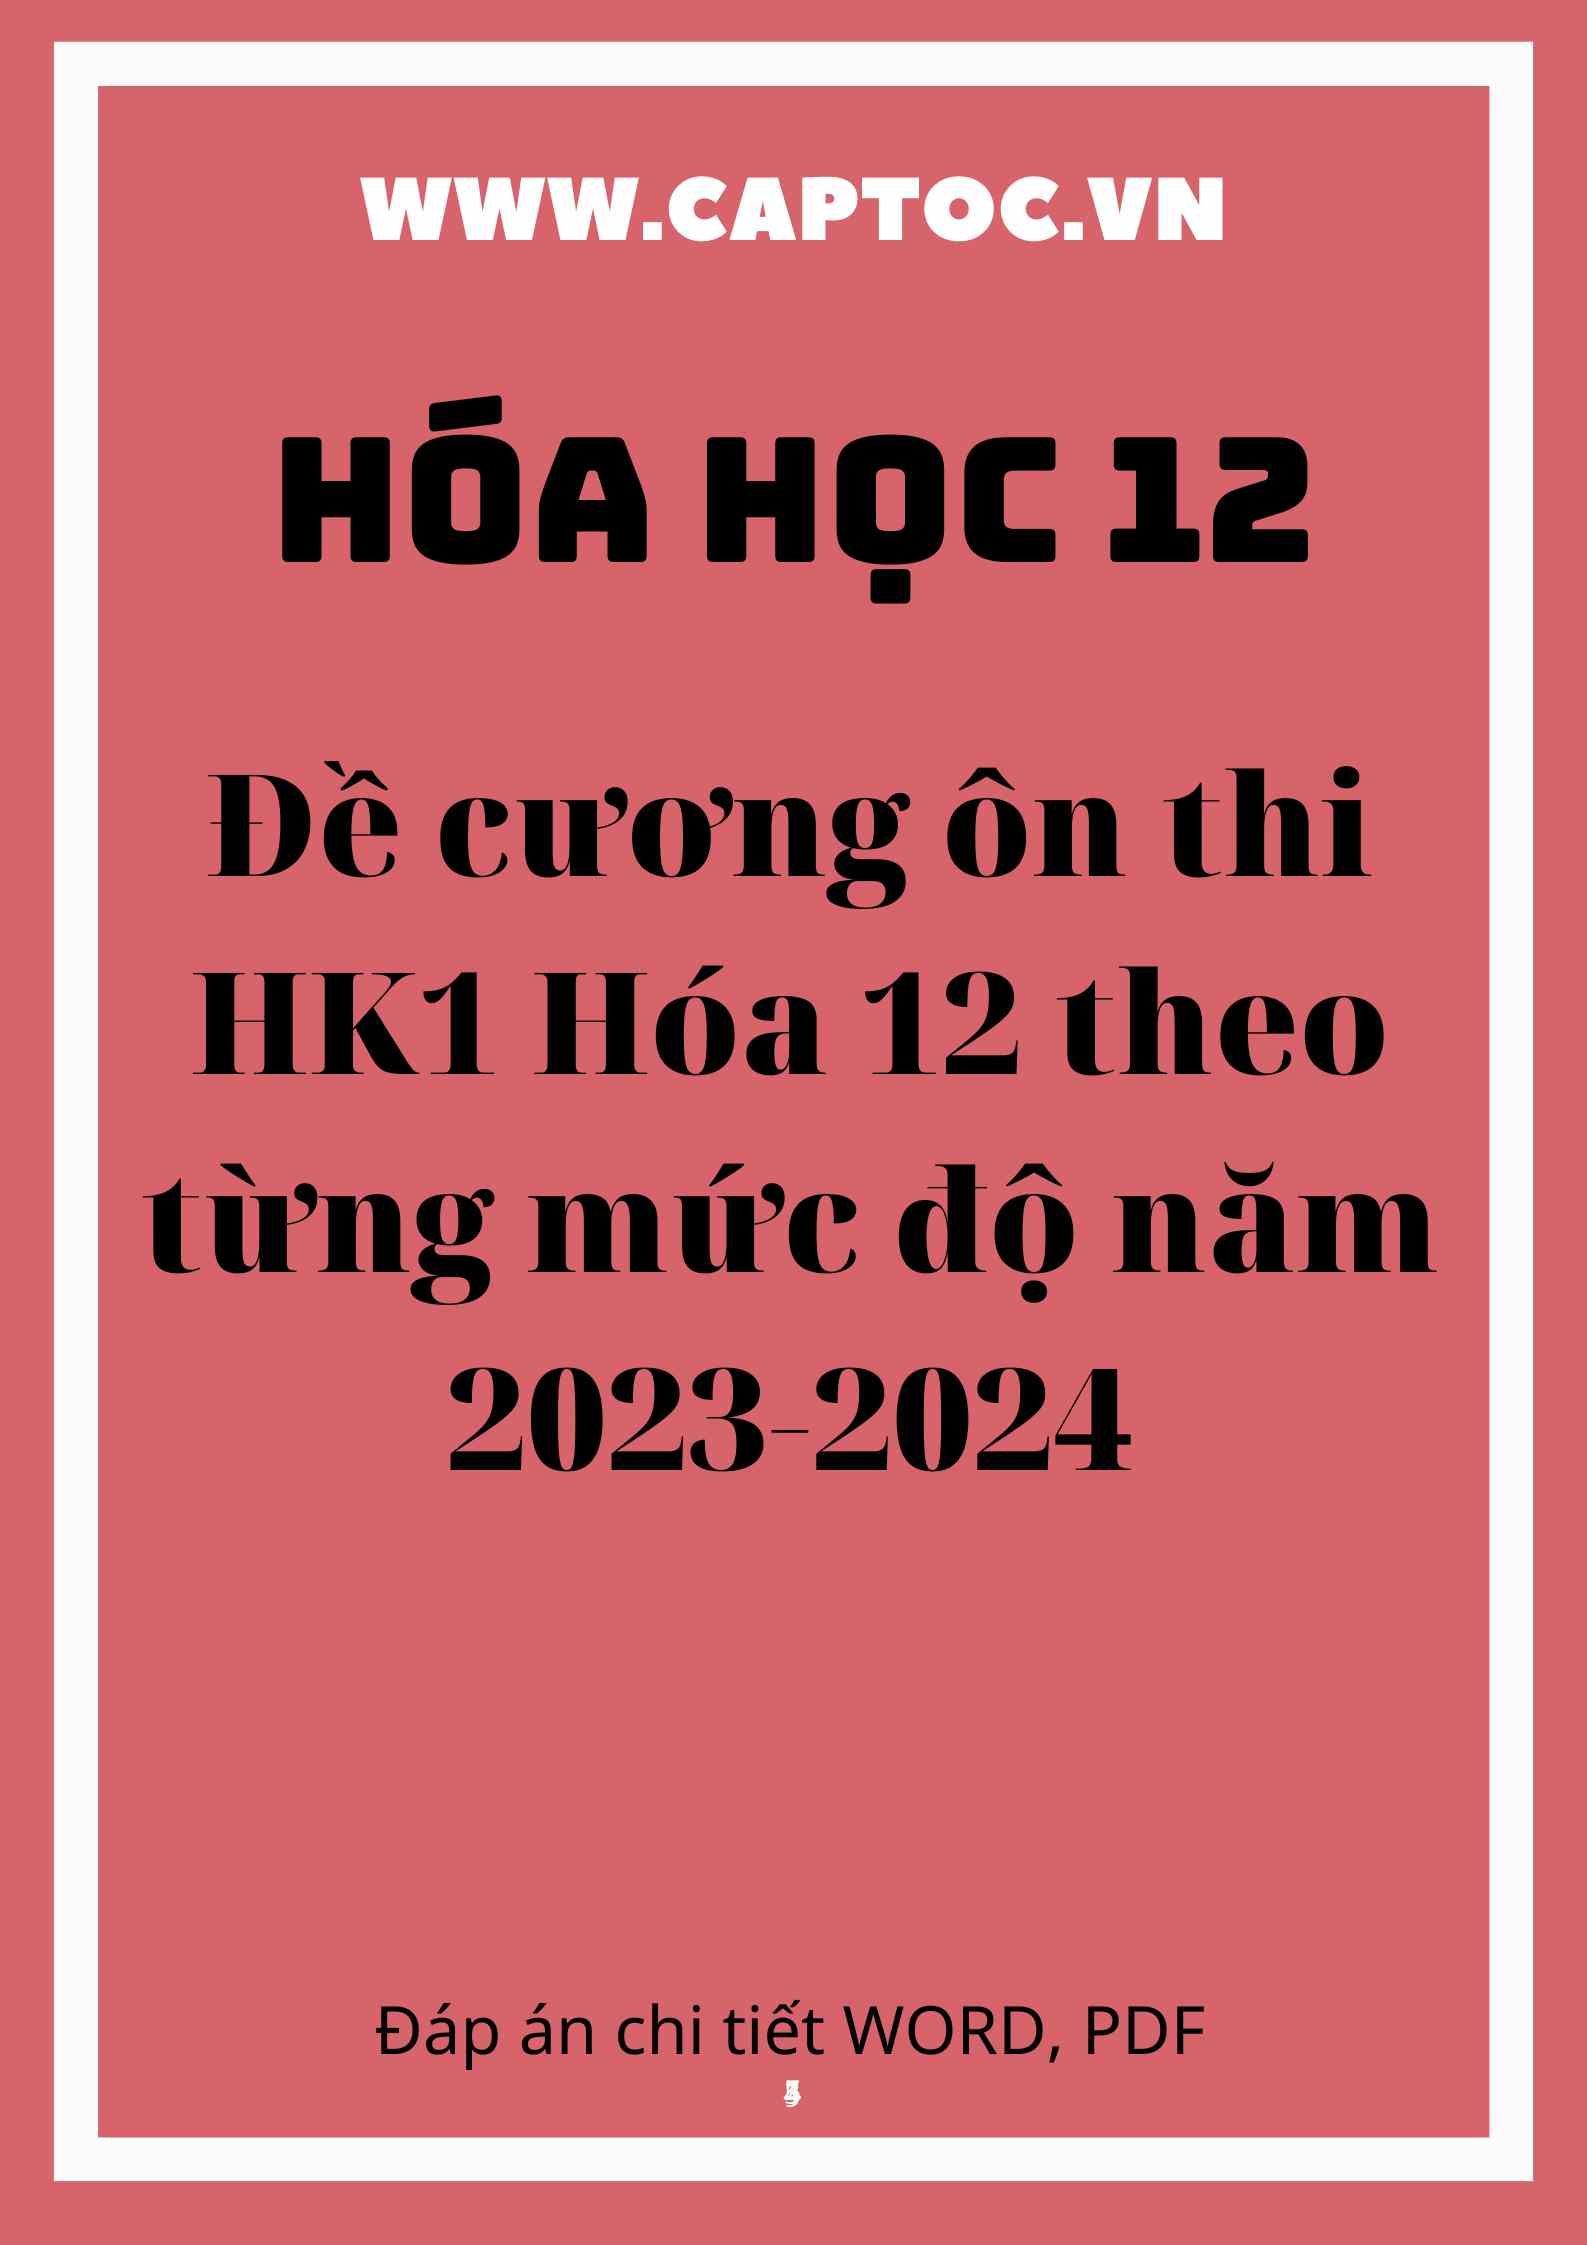 Đề cương ôn thi HK1 Hóa 12 theo từng mức độ năm 2023-2024